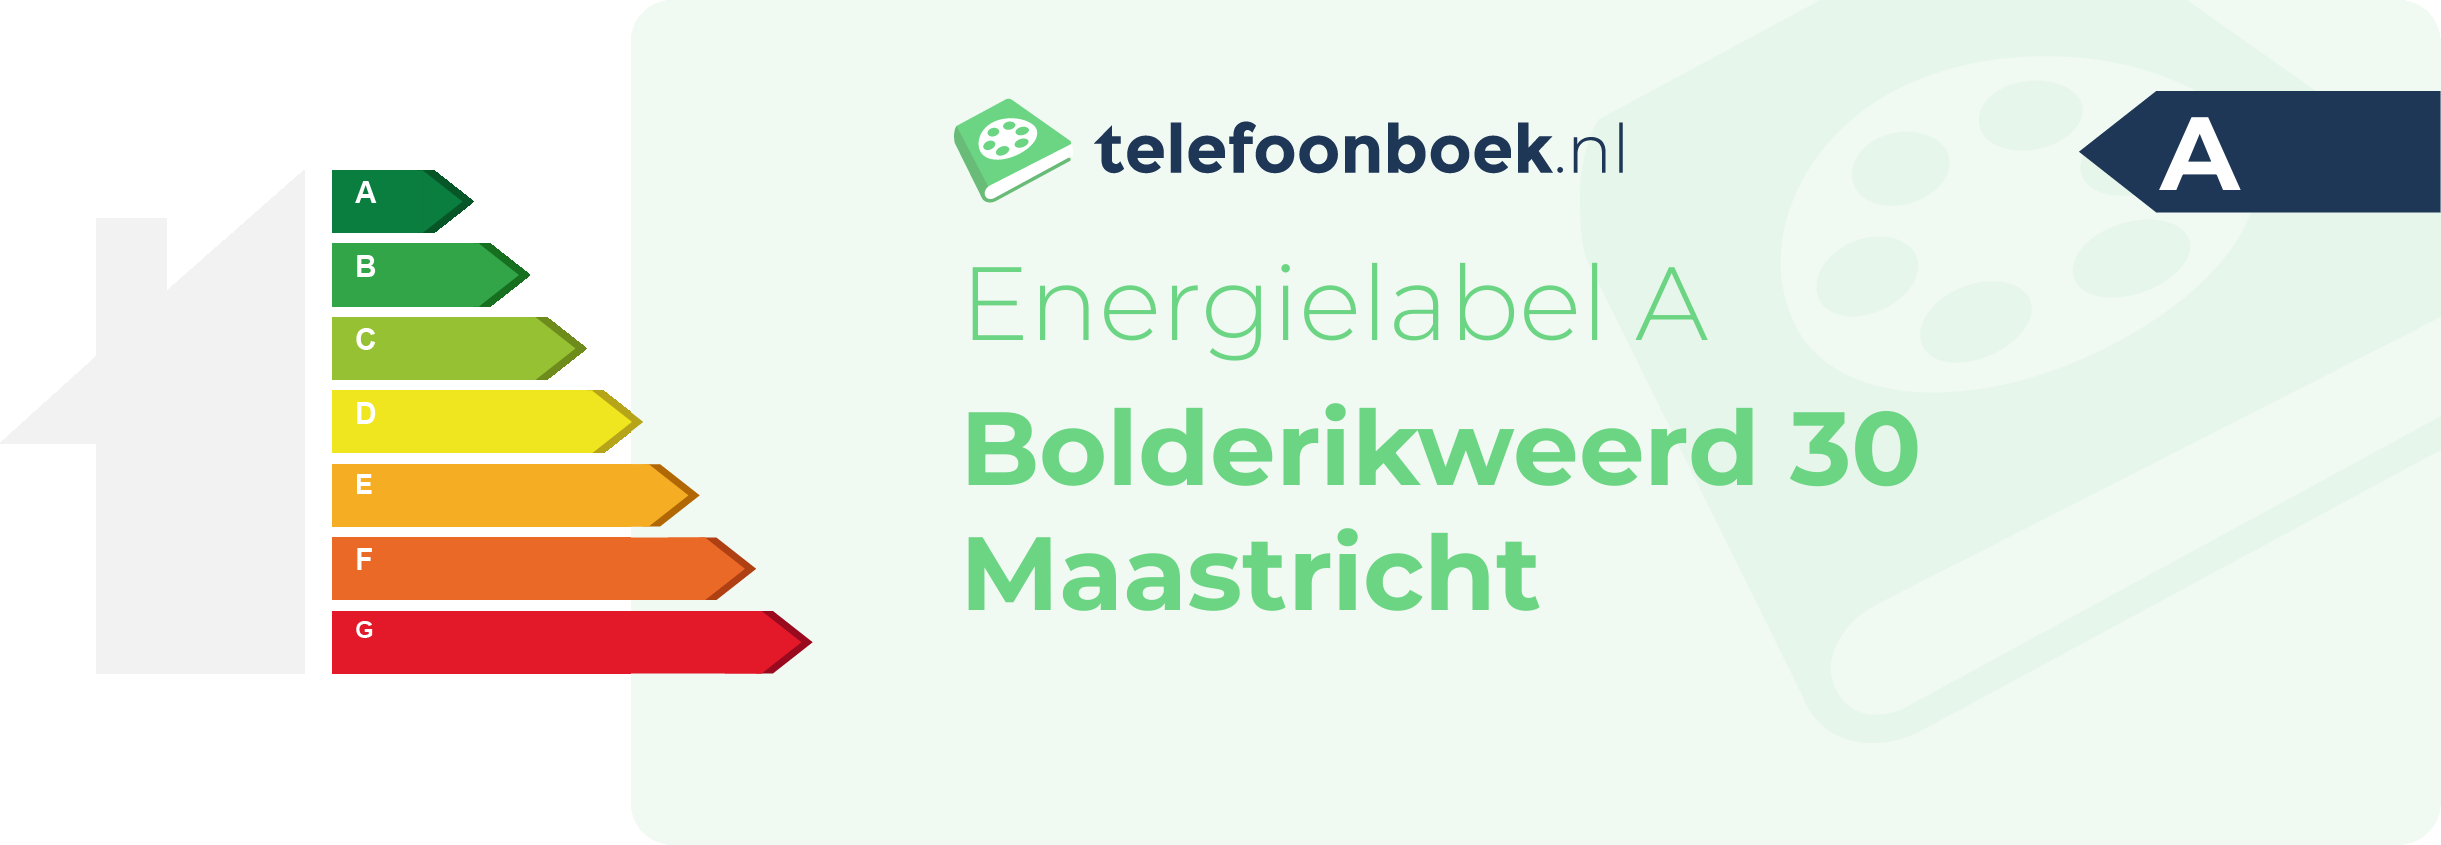 Energielabel Bolderikweerd 30 Maastricht